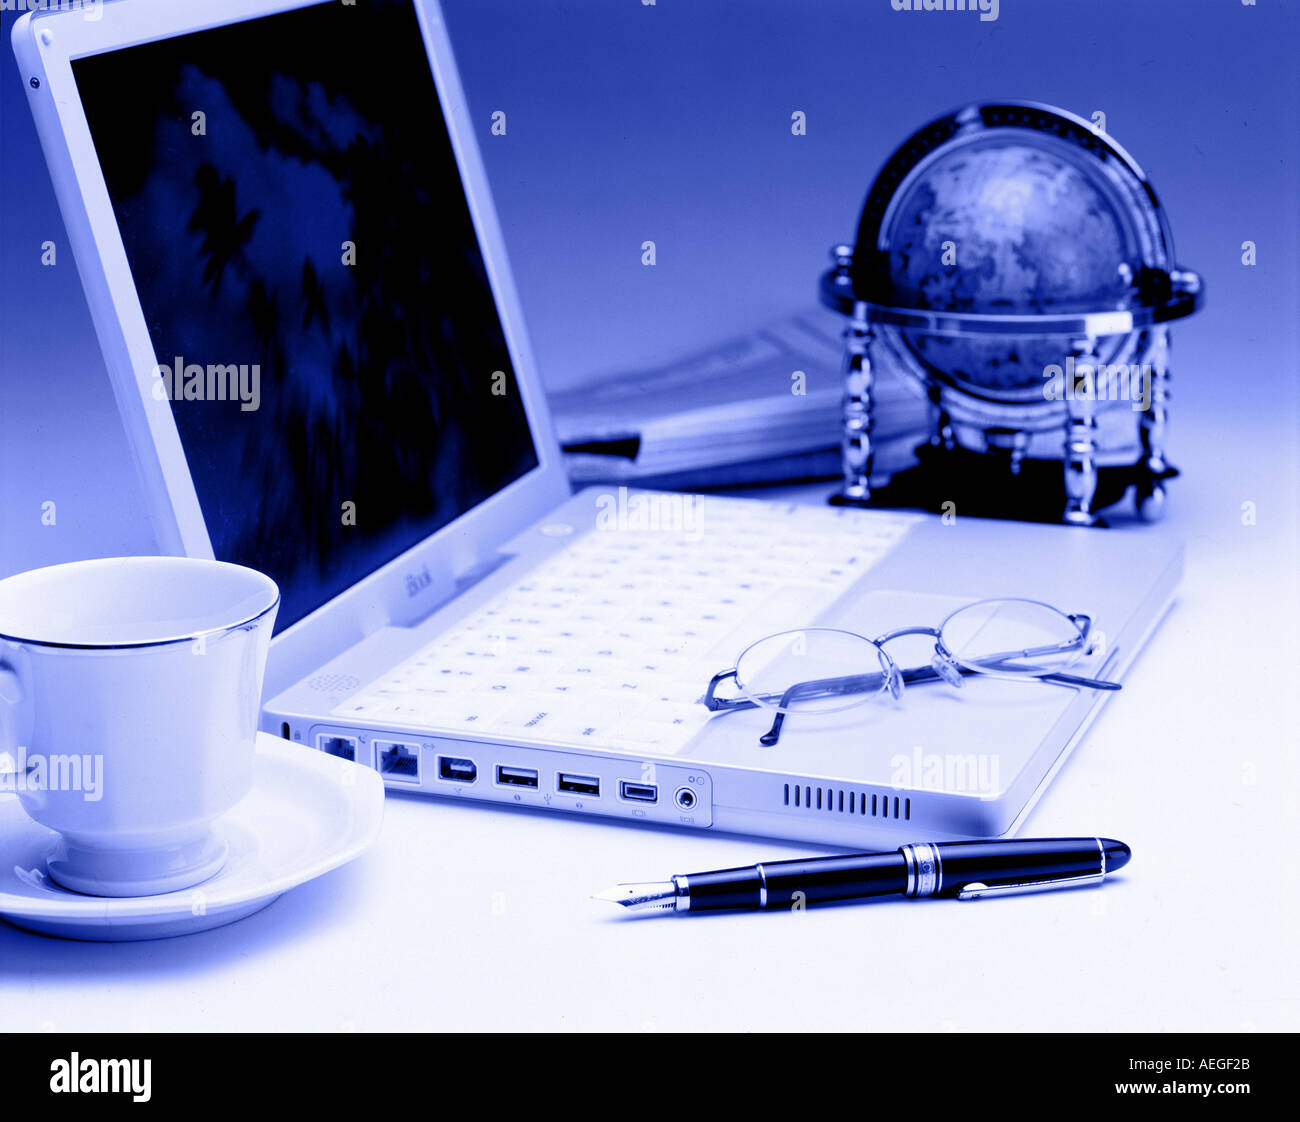 Ordinateur portable bureau globe lunettes stylo tasse soucoupe journal bleuâtre de la tâche de travail ordinateur technologie concept d'affaires Banque D'Images